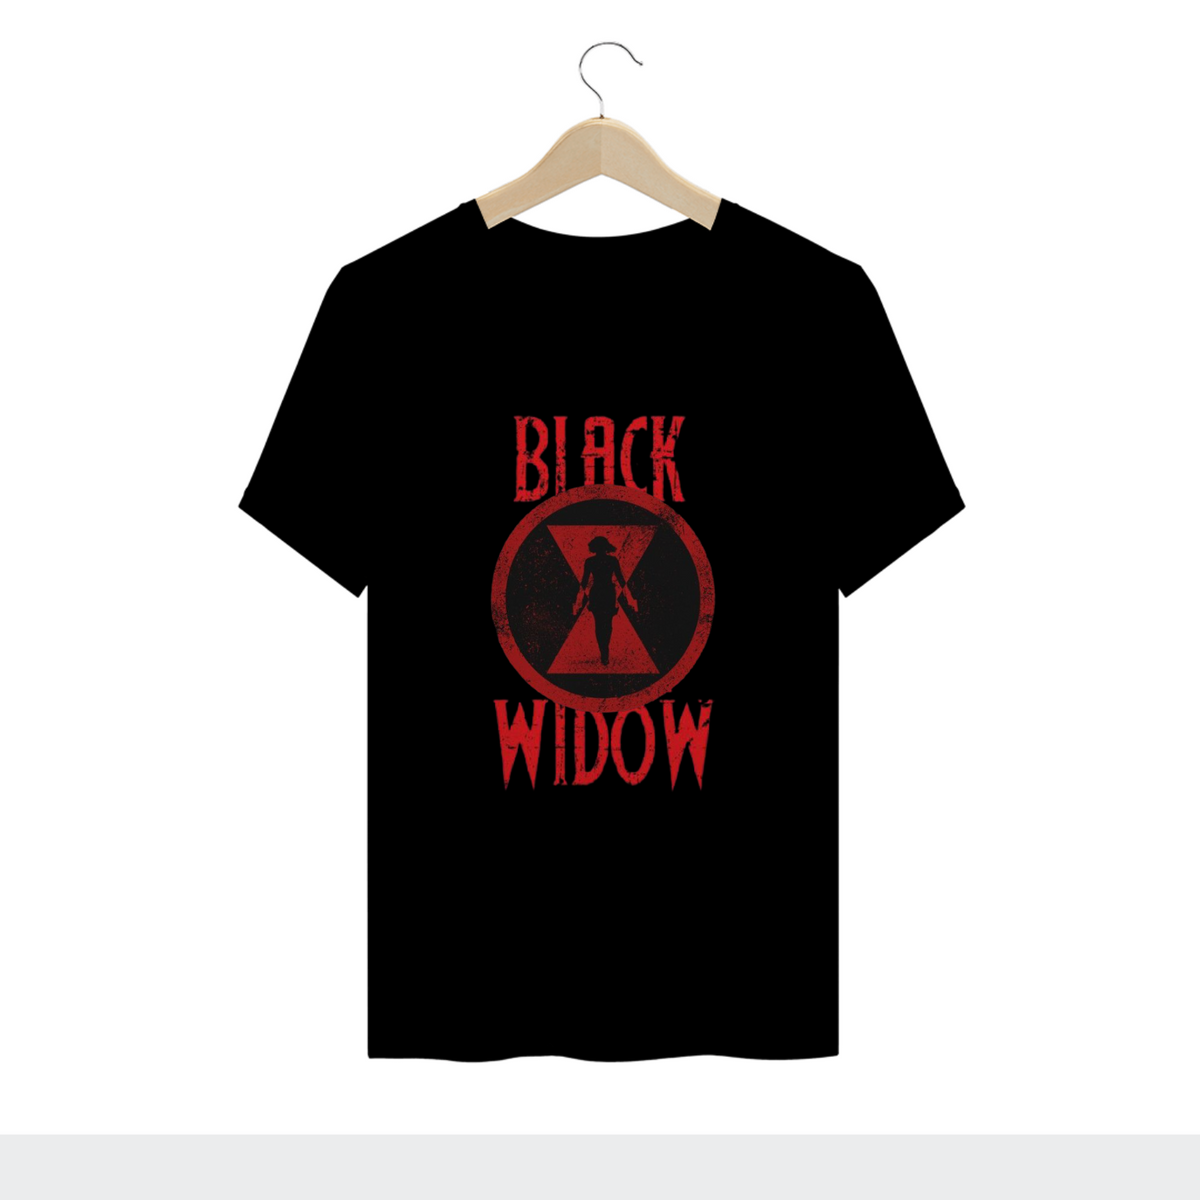 Nome do produto: Black Widow